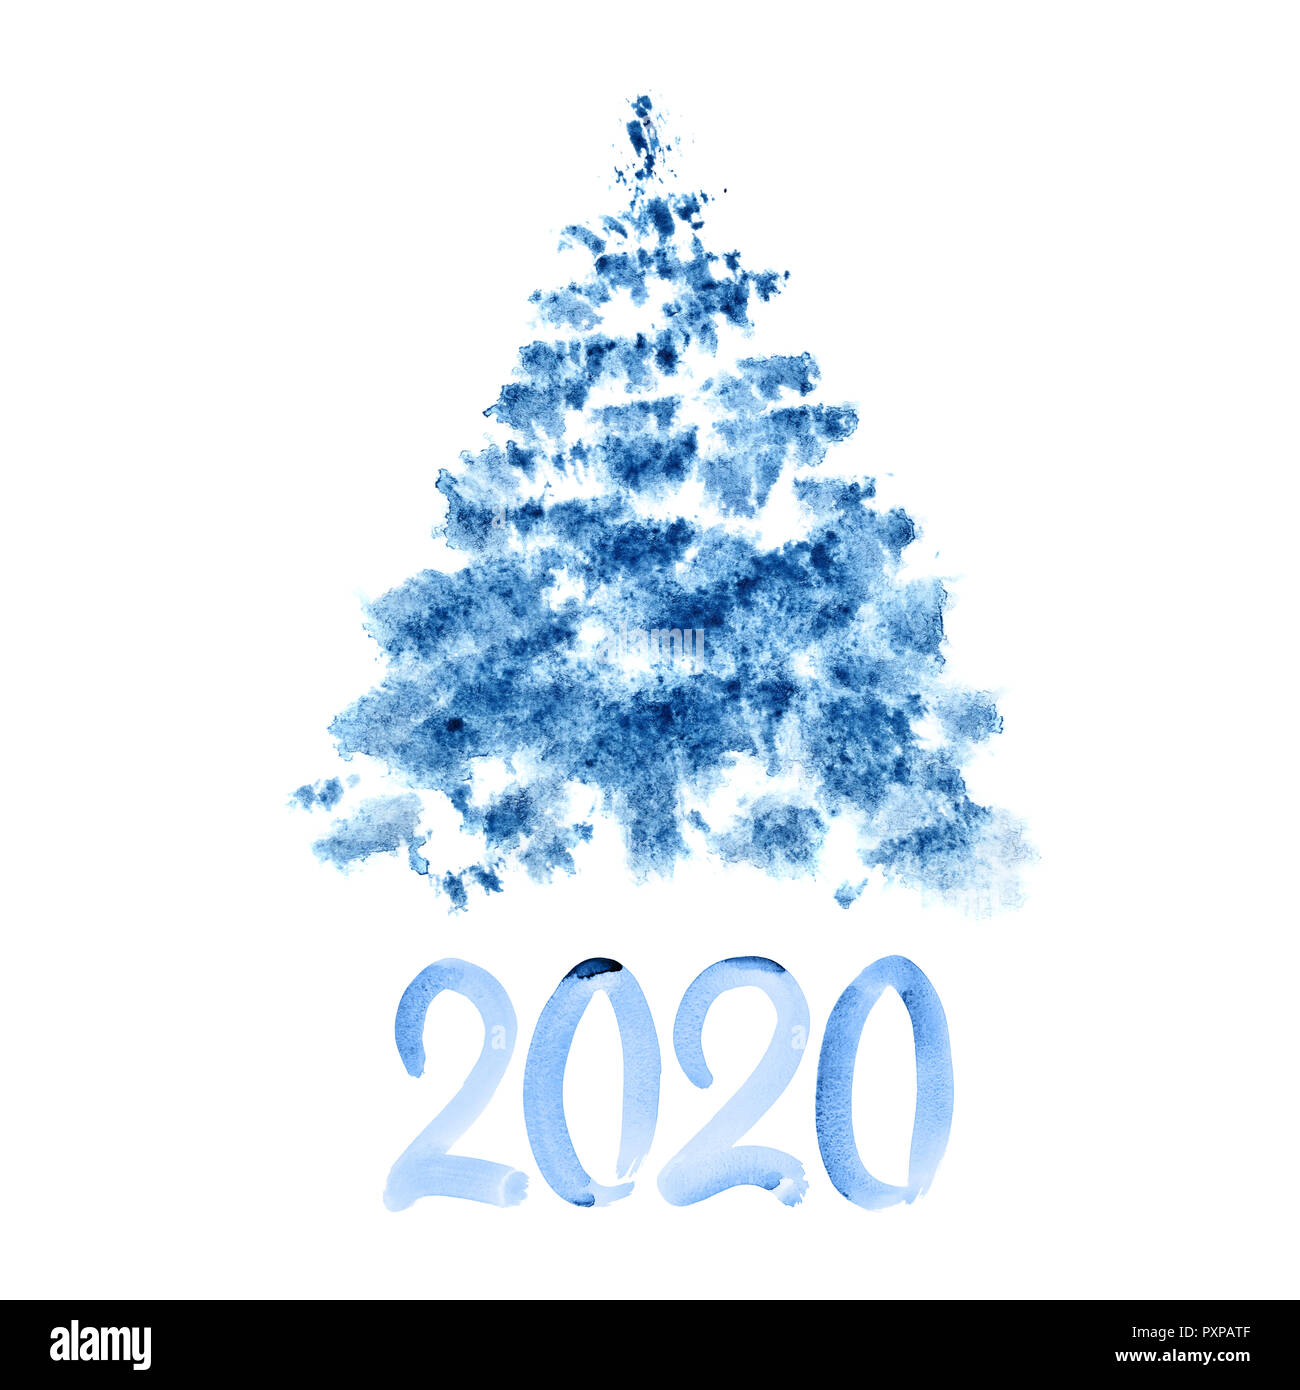 Foto Di Natale 2020.Nuovo Anno 2020 Blu Acquerello Albero Di Natale Foto Stock Alamy